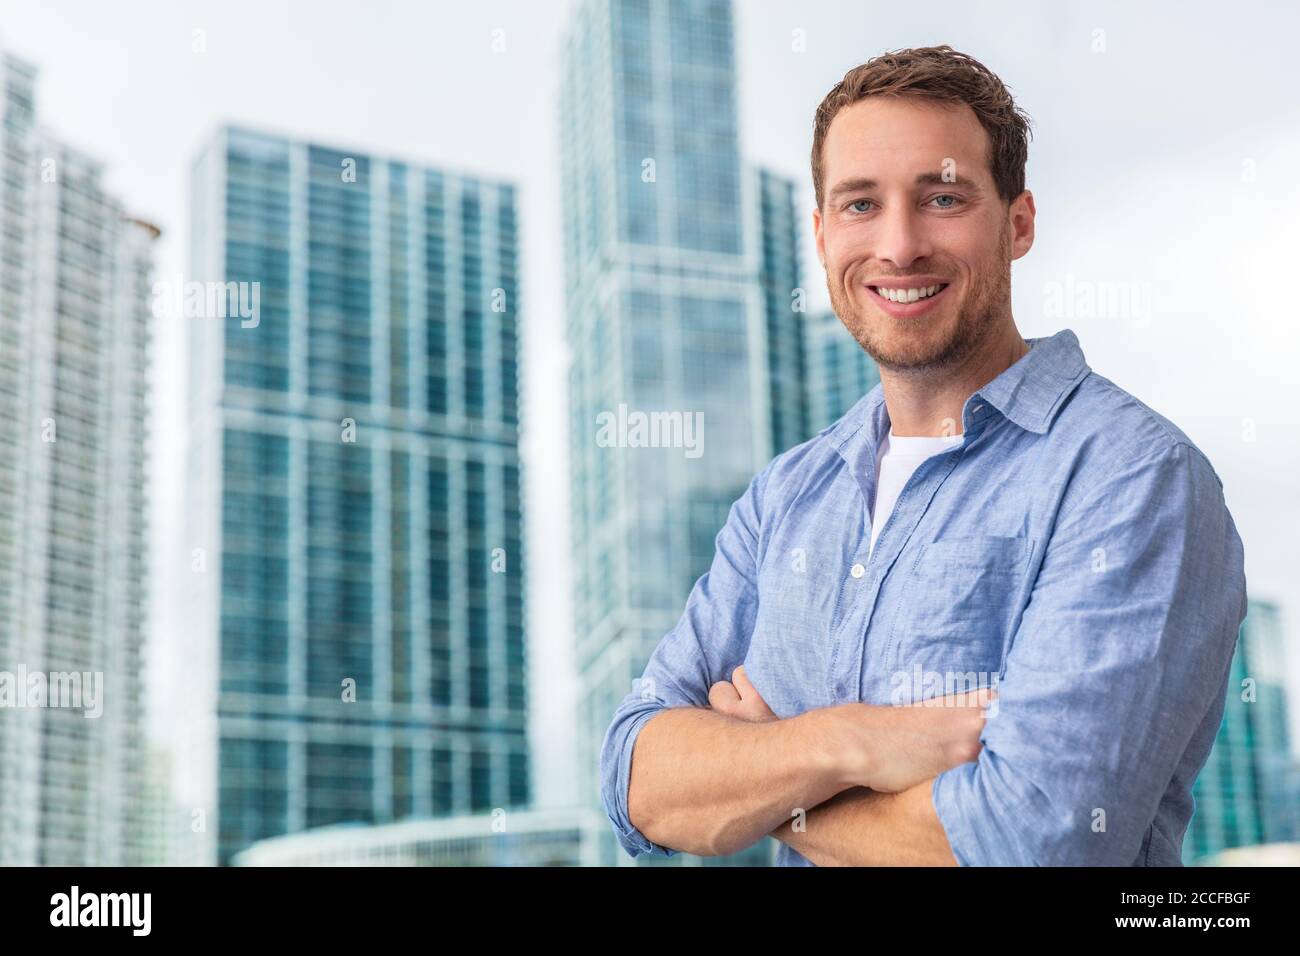 Felice giovane uomo uomo uomo uomo d'affari ritratto giovane sorridente fiducioso di fronte al moderno condominio costruzione grattacielo fuori. Gente di stile di vita della città Foto Stock